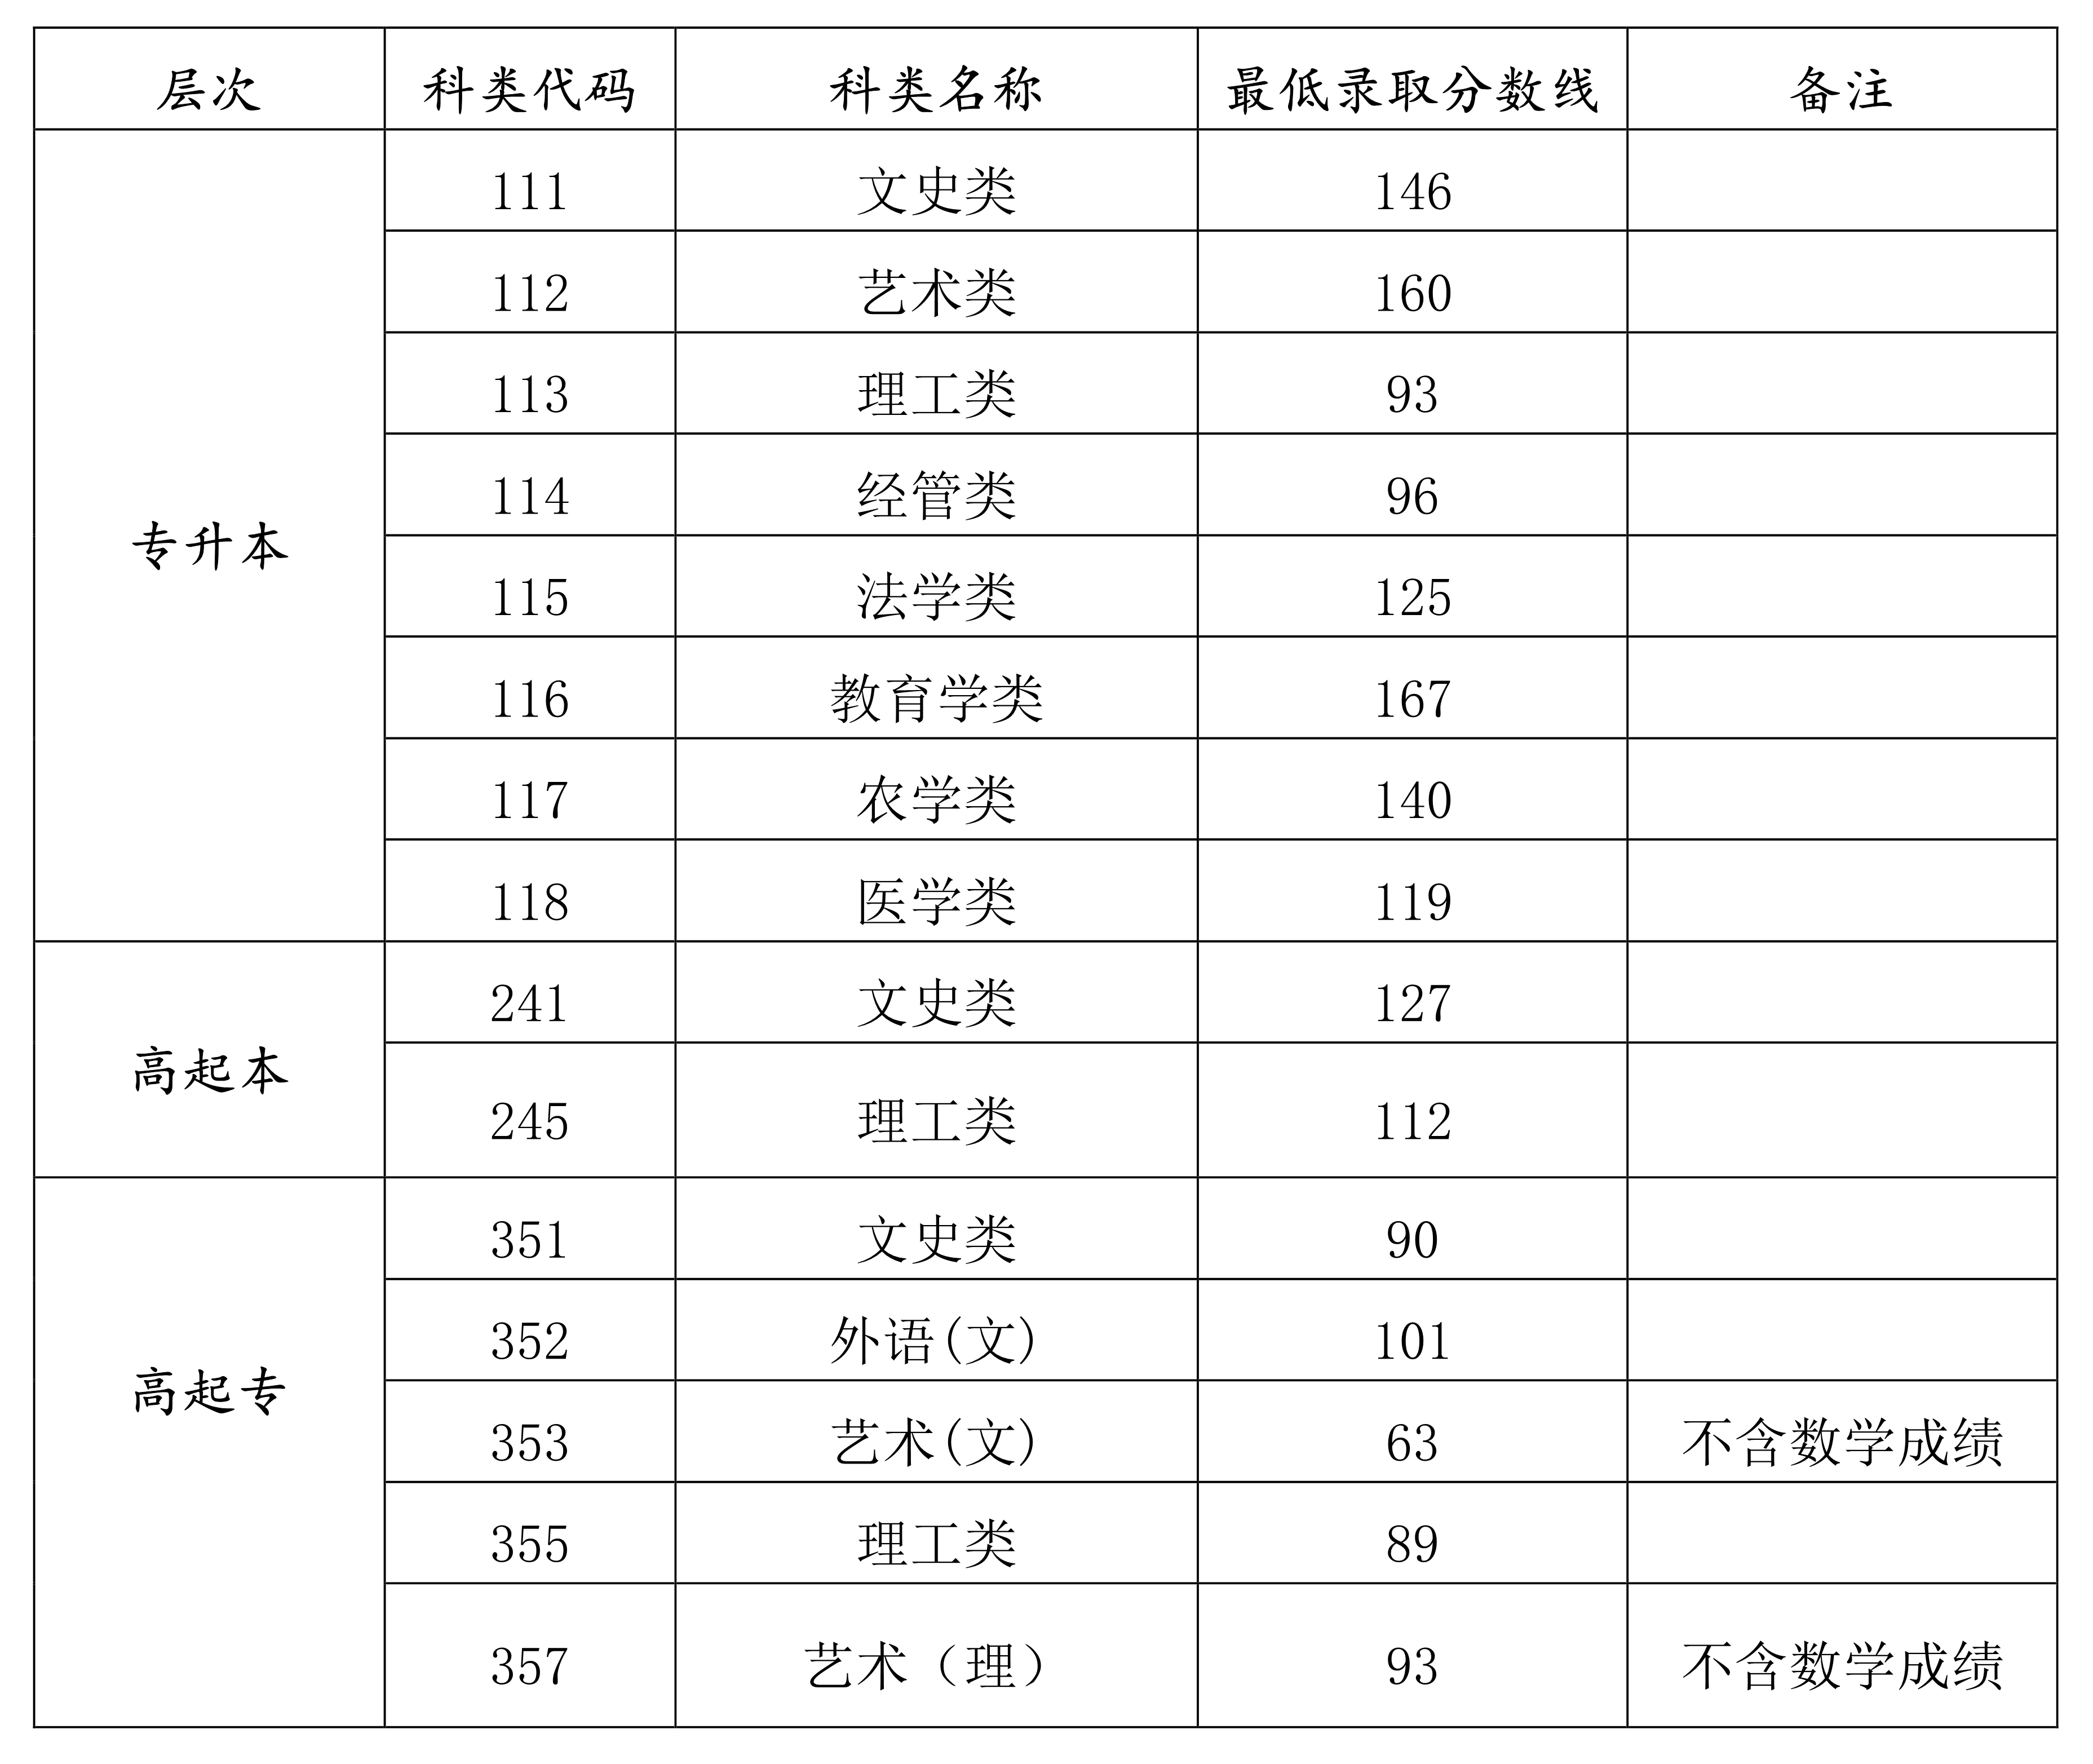 2021年海南省成人高校招生录取最低控制分数线公布